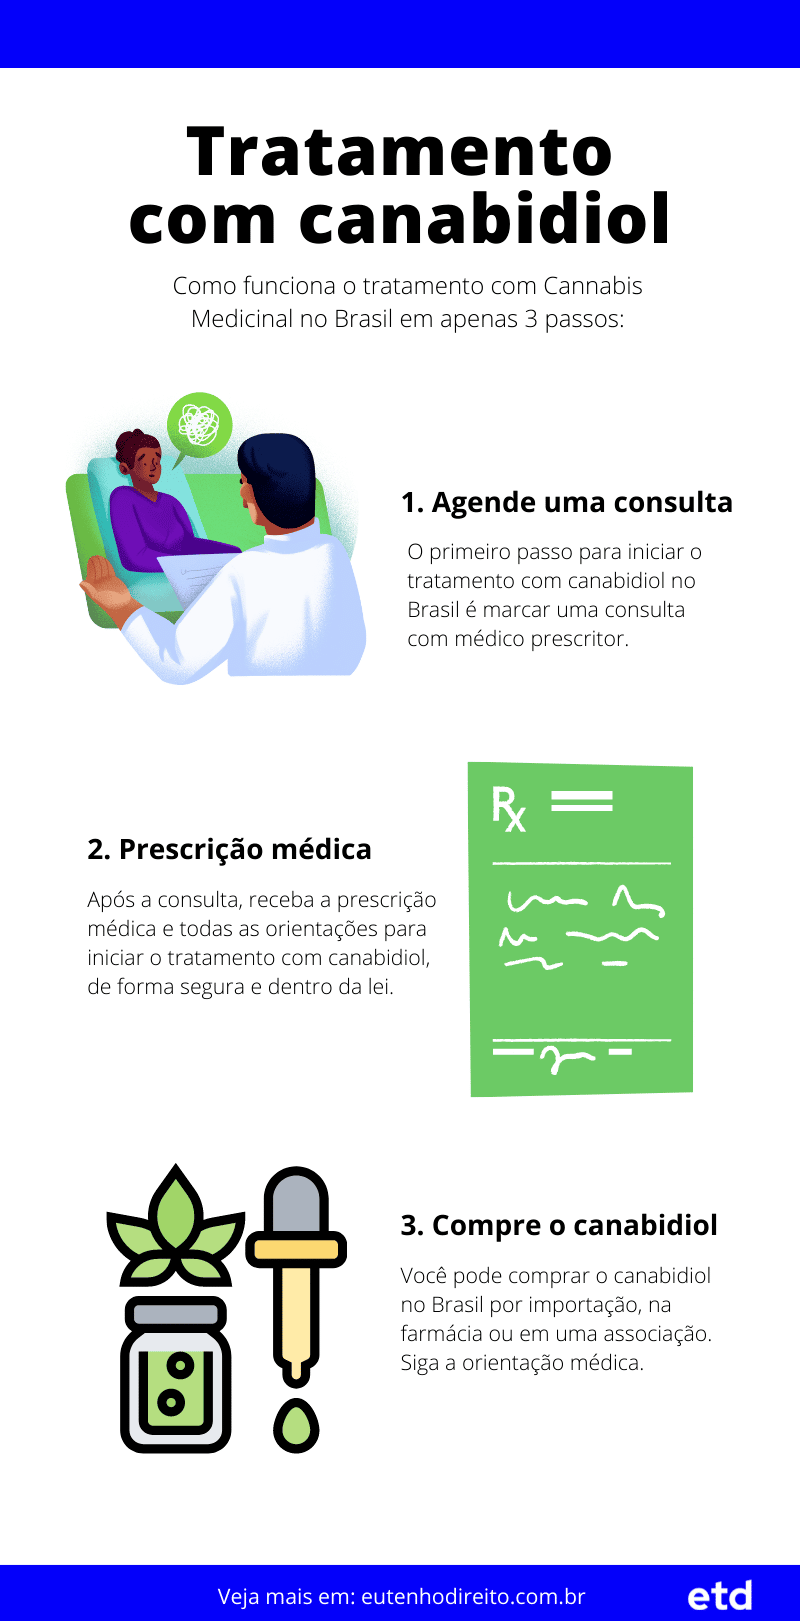 Infográfico sobre como funciona o tratamento com canabidiol no Brasil em 3 passos: agendar consulta, prescrição médica e compra do medicamento.